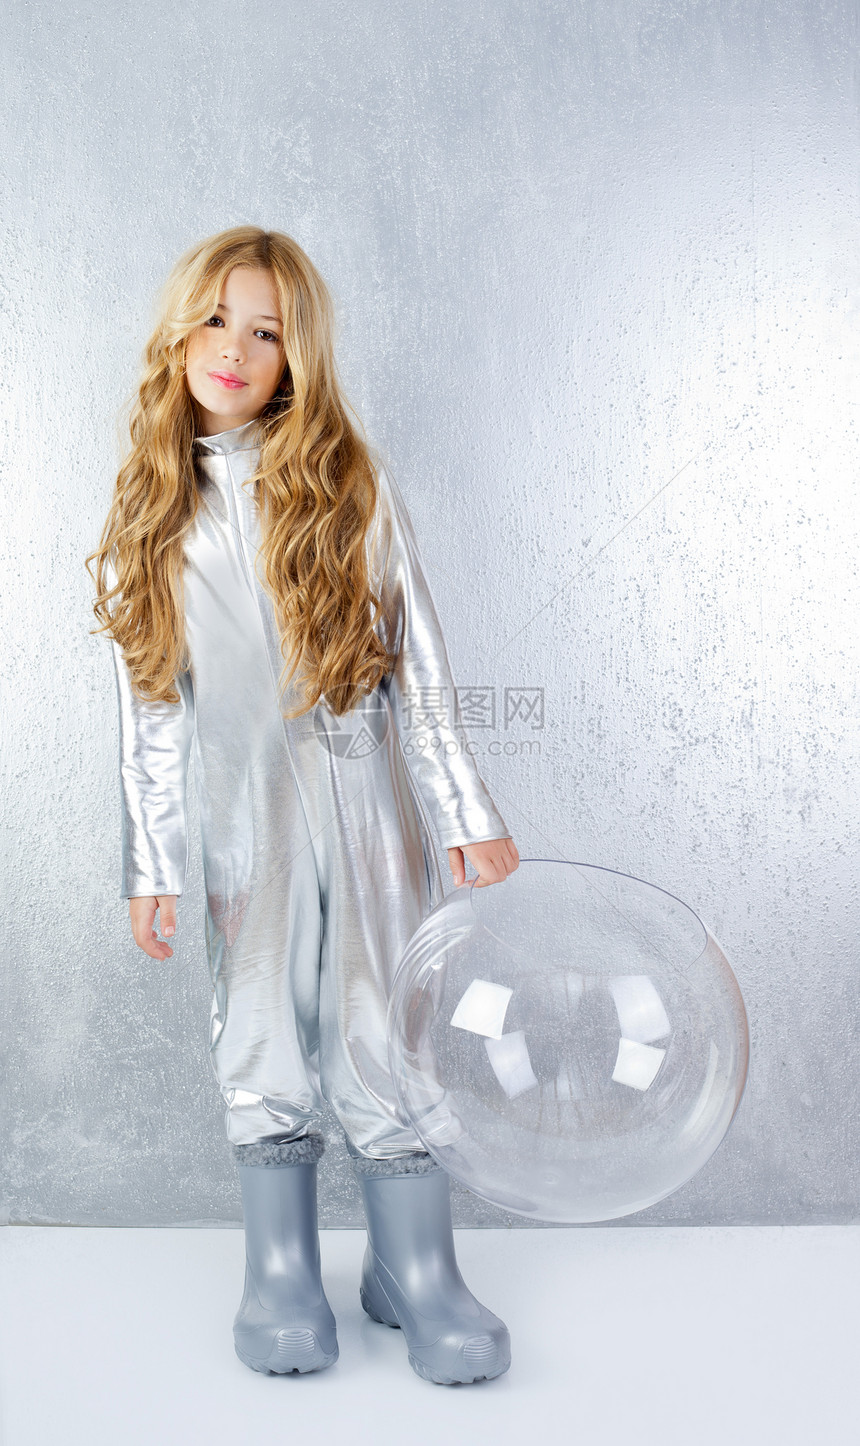 穿着银制服和玻璃头盔的宇航员女孩靴子卷曲金发戏服想像力套装勘探水晶头发衣服图片